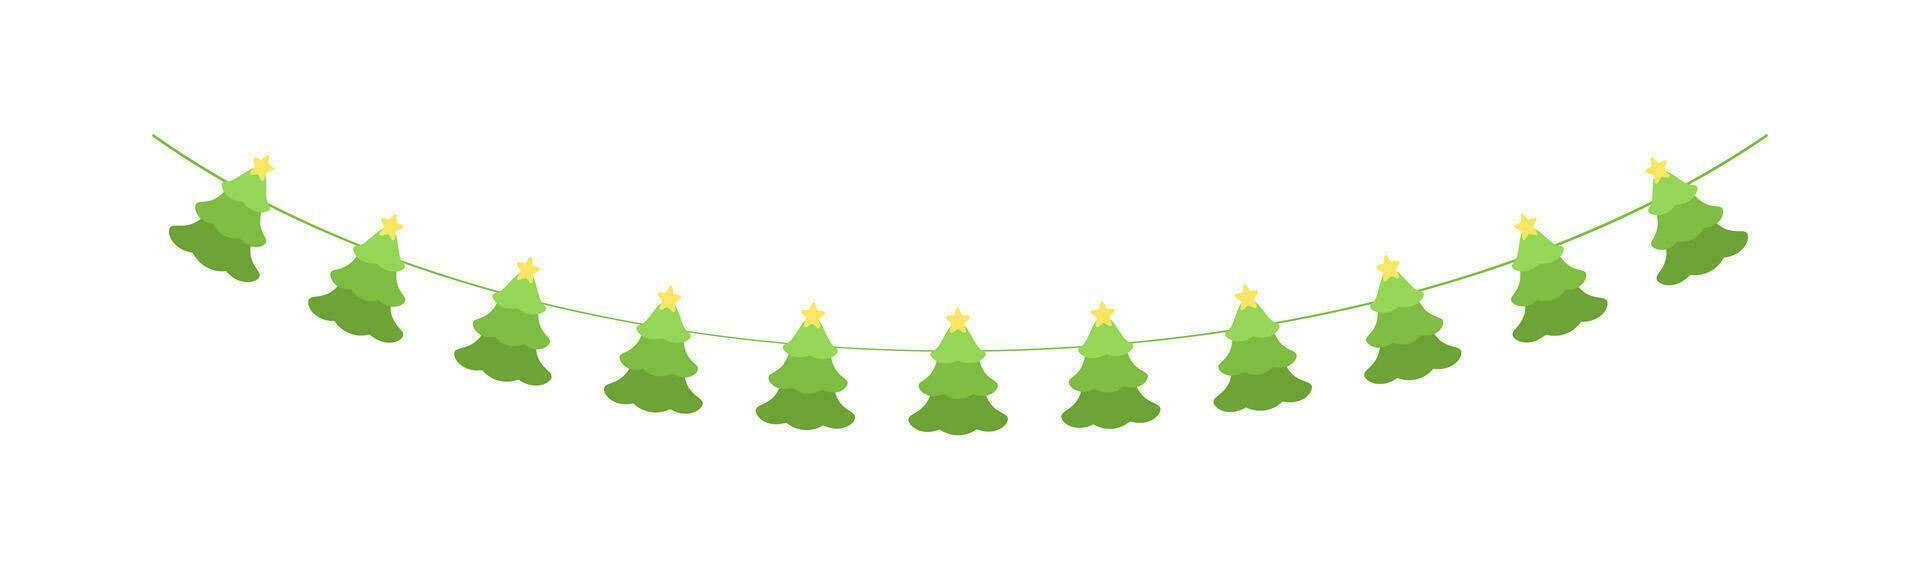 jul träd krans vektor illustration, jul grafik festlig vinter- Semester säsong flaggväv